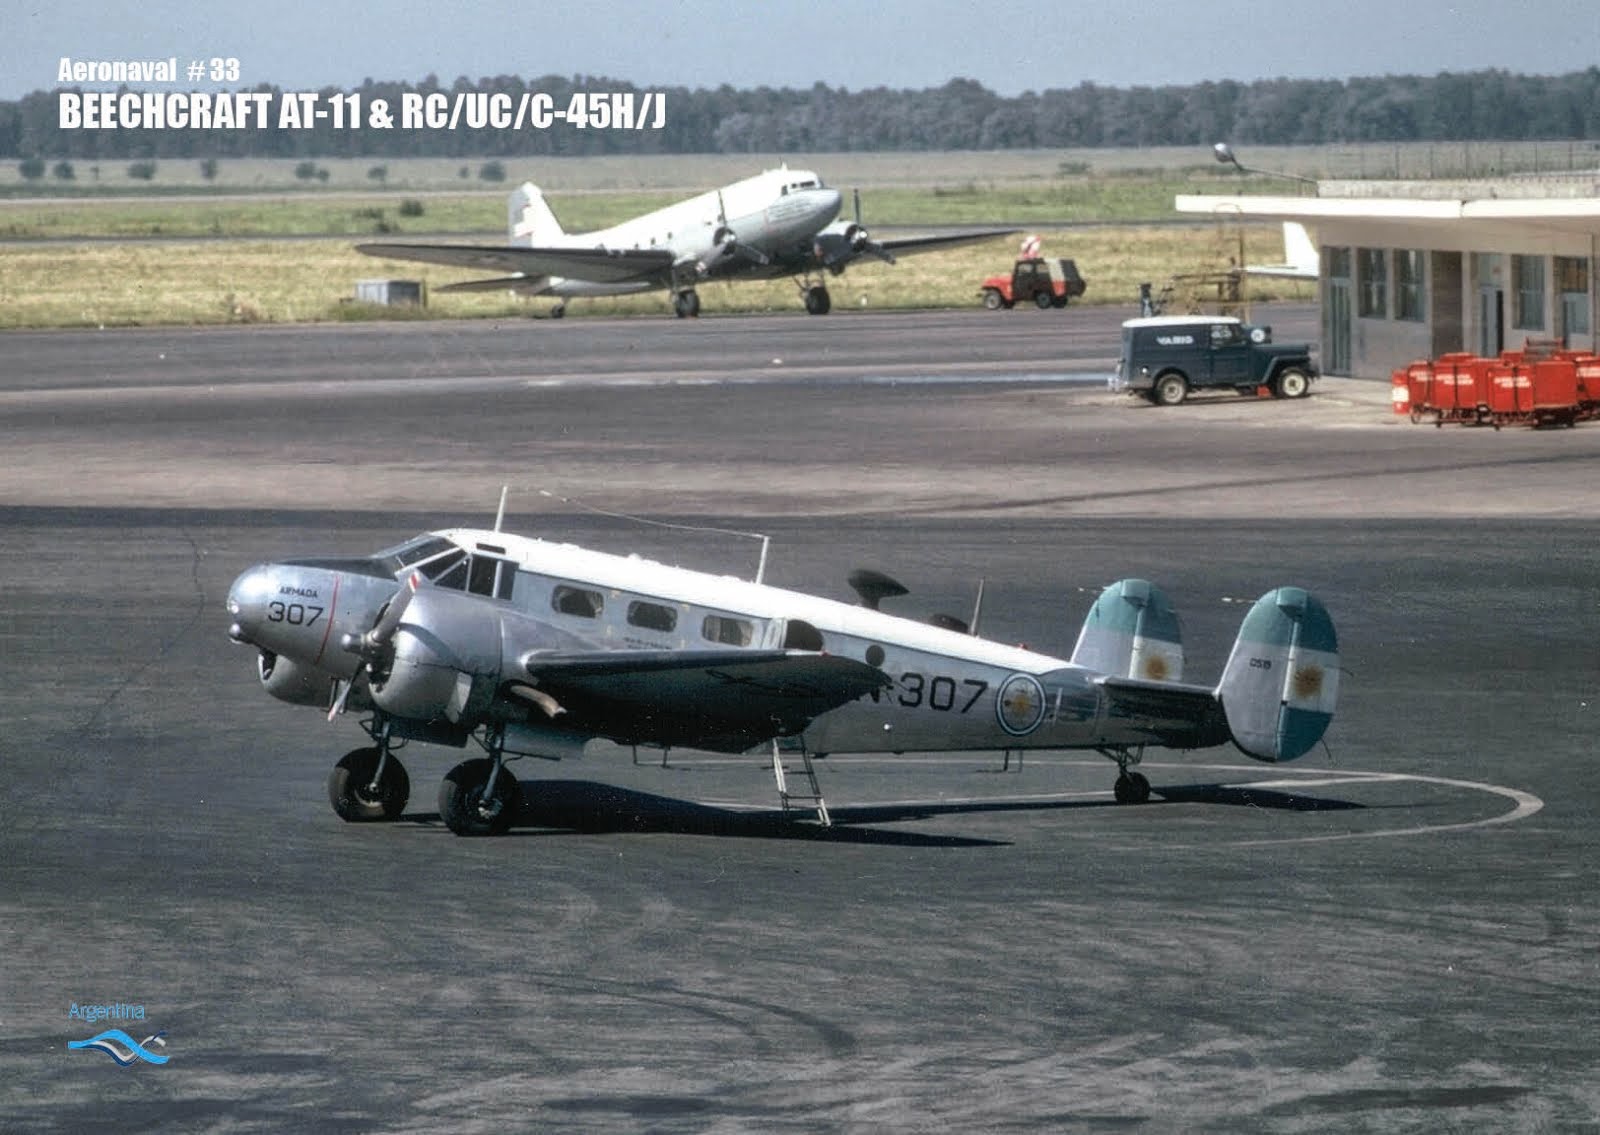 Serie Aeronaval N°33 “Beechcraft AT-11 & RC/UC/C-45H/J”